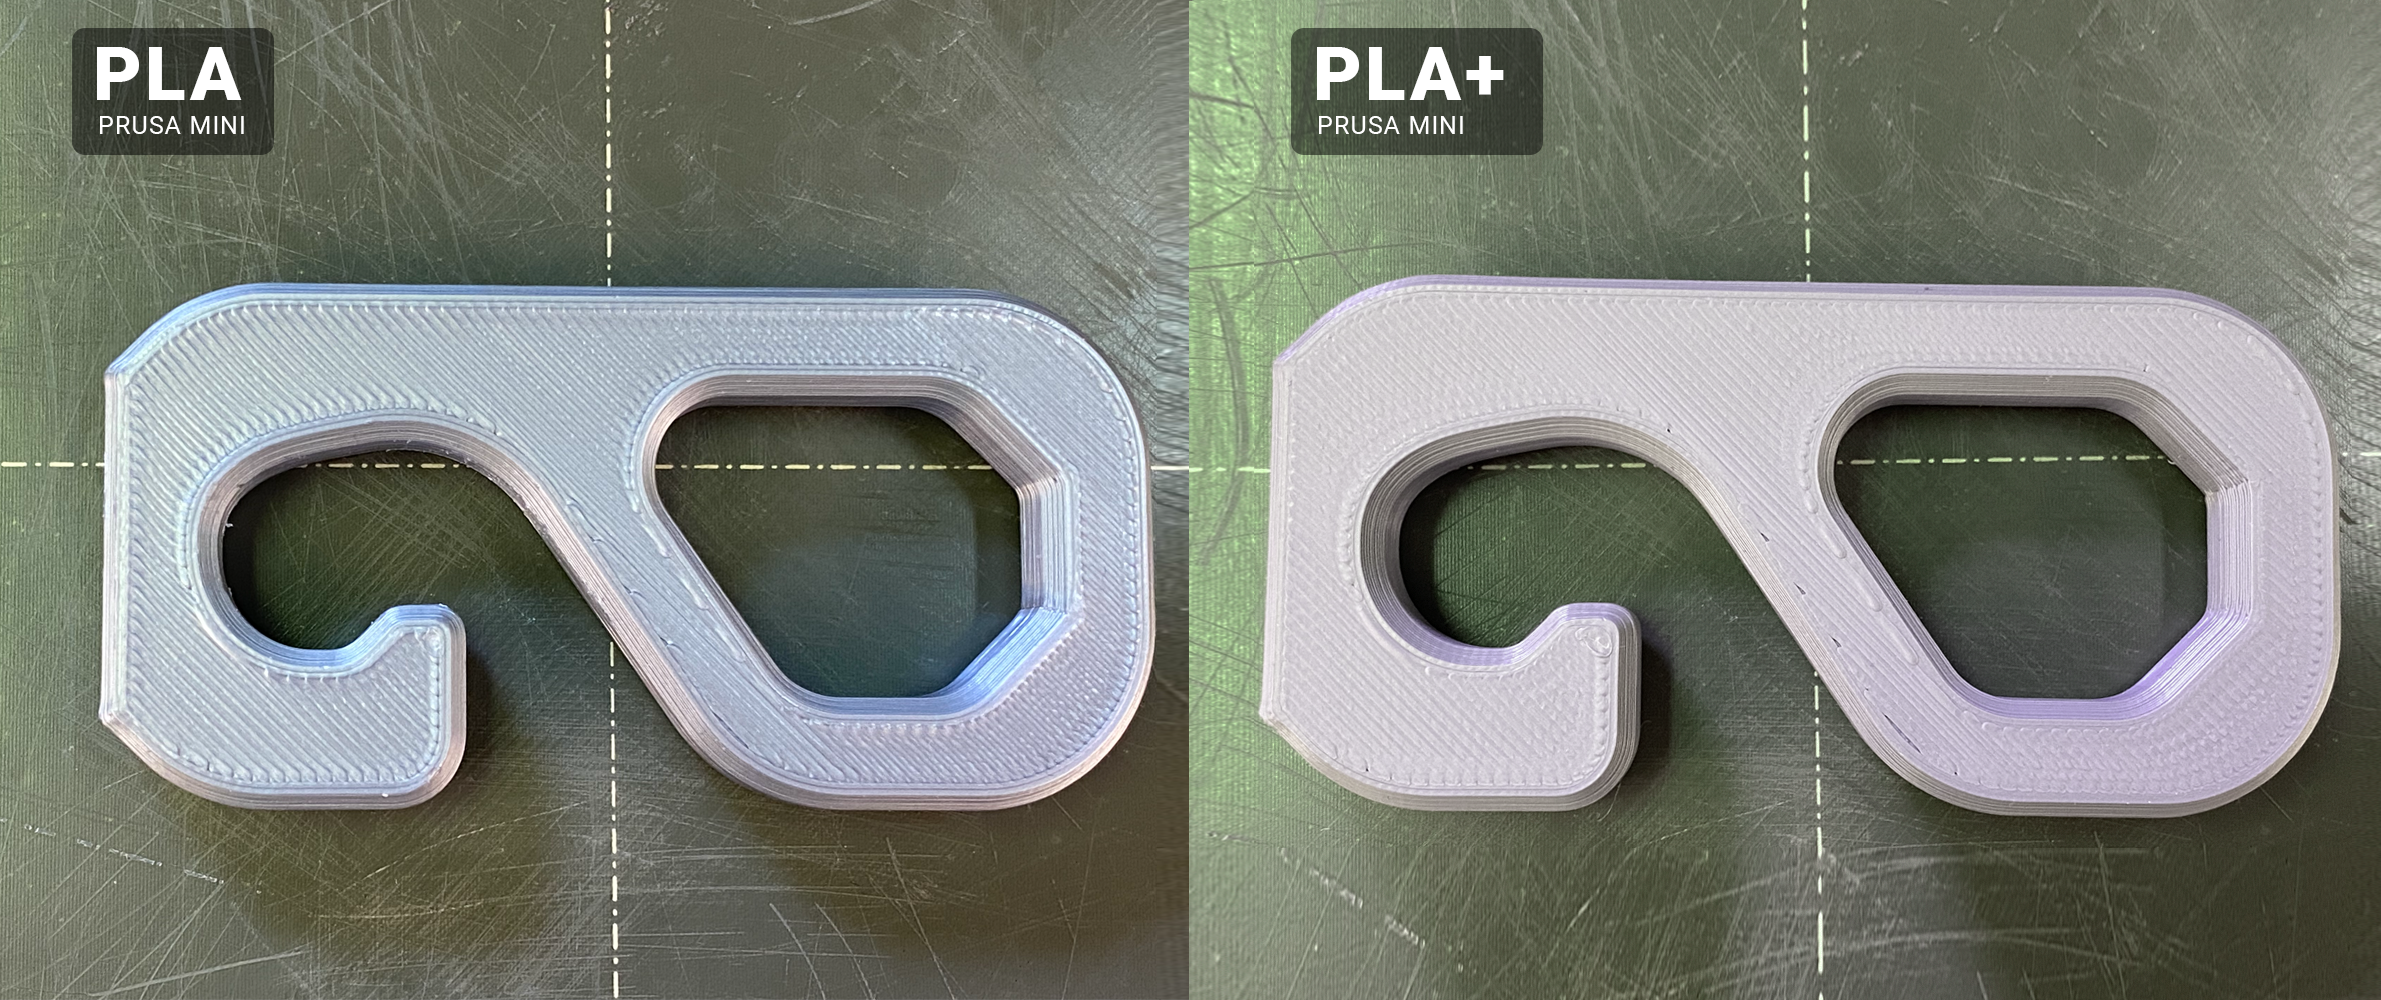 Jaký je rozdíl mezi PLA a PLA+?